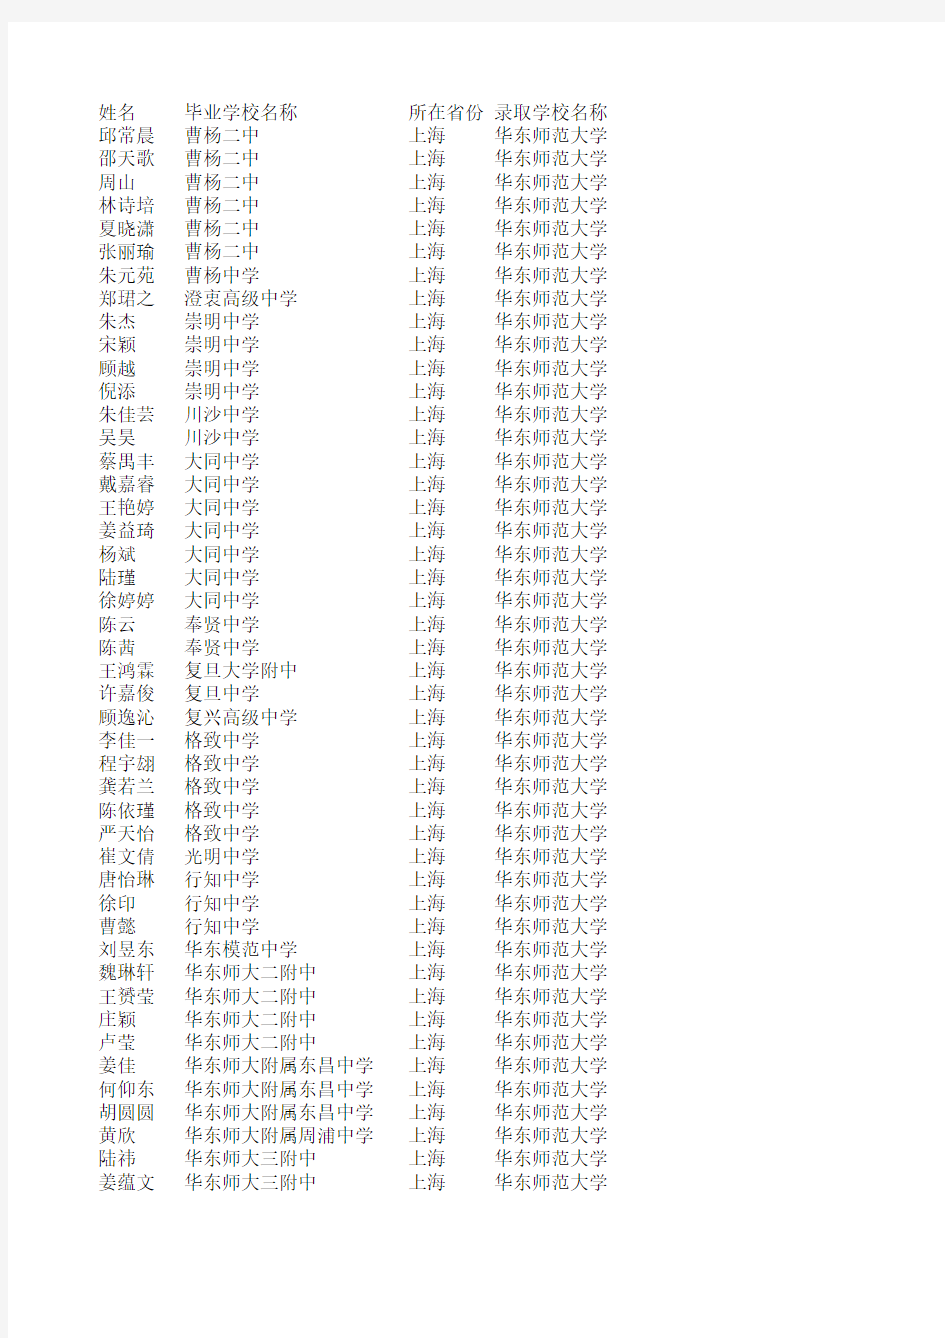 2010年华东师范大学自主招生录取名单(上海地区)